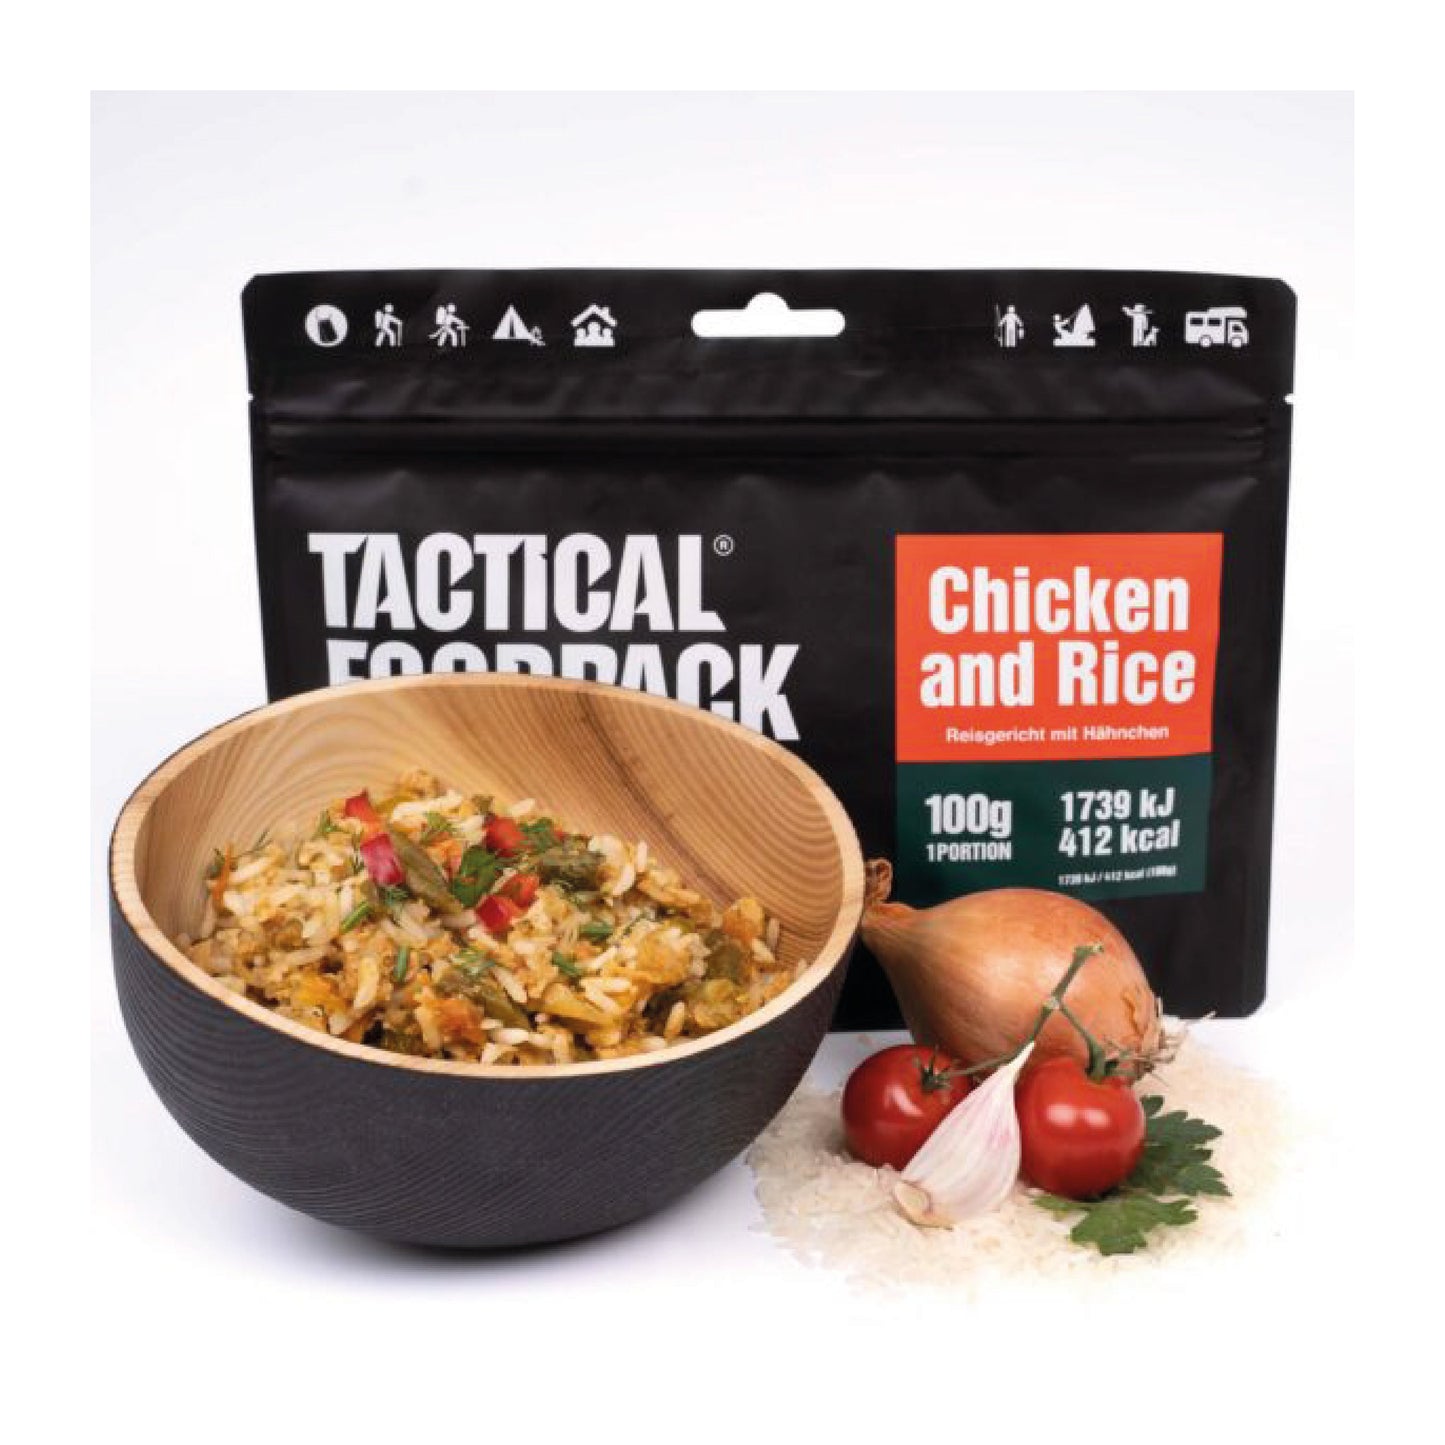 TACTICAL FOODPACK® Reisgericht mit Hühnchen 100g